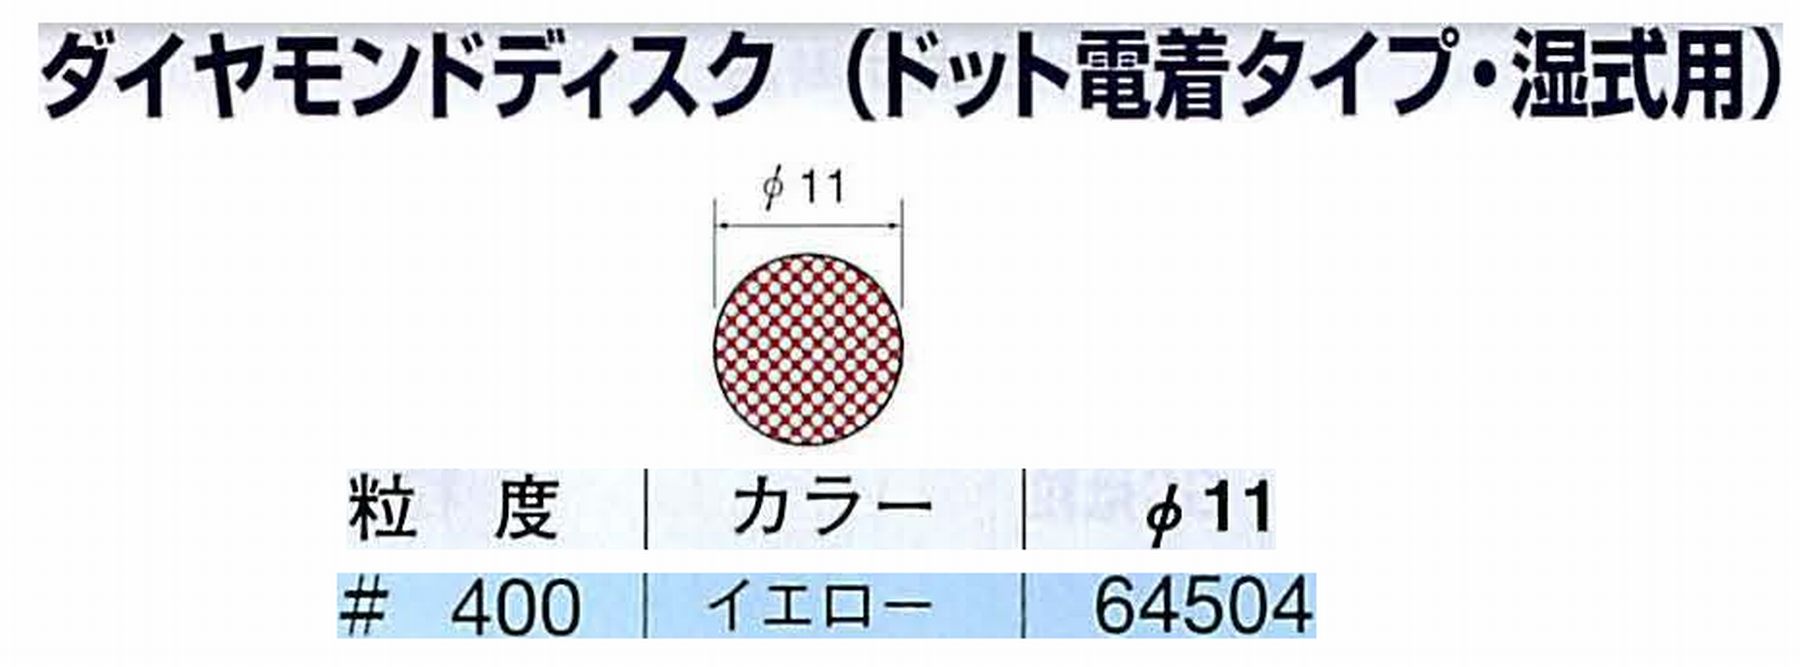 ナカニシ/NAKANISHI アングルグラインダ(電動・エアー) アングルアタッチメント専用工具 ダイヤモンドディスク(ドット電着タイプ・湿式用) 64504